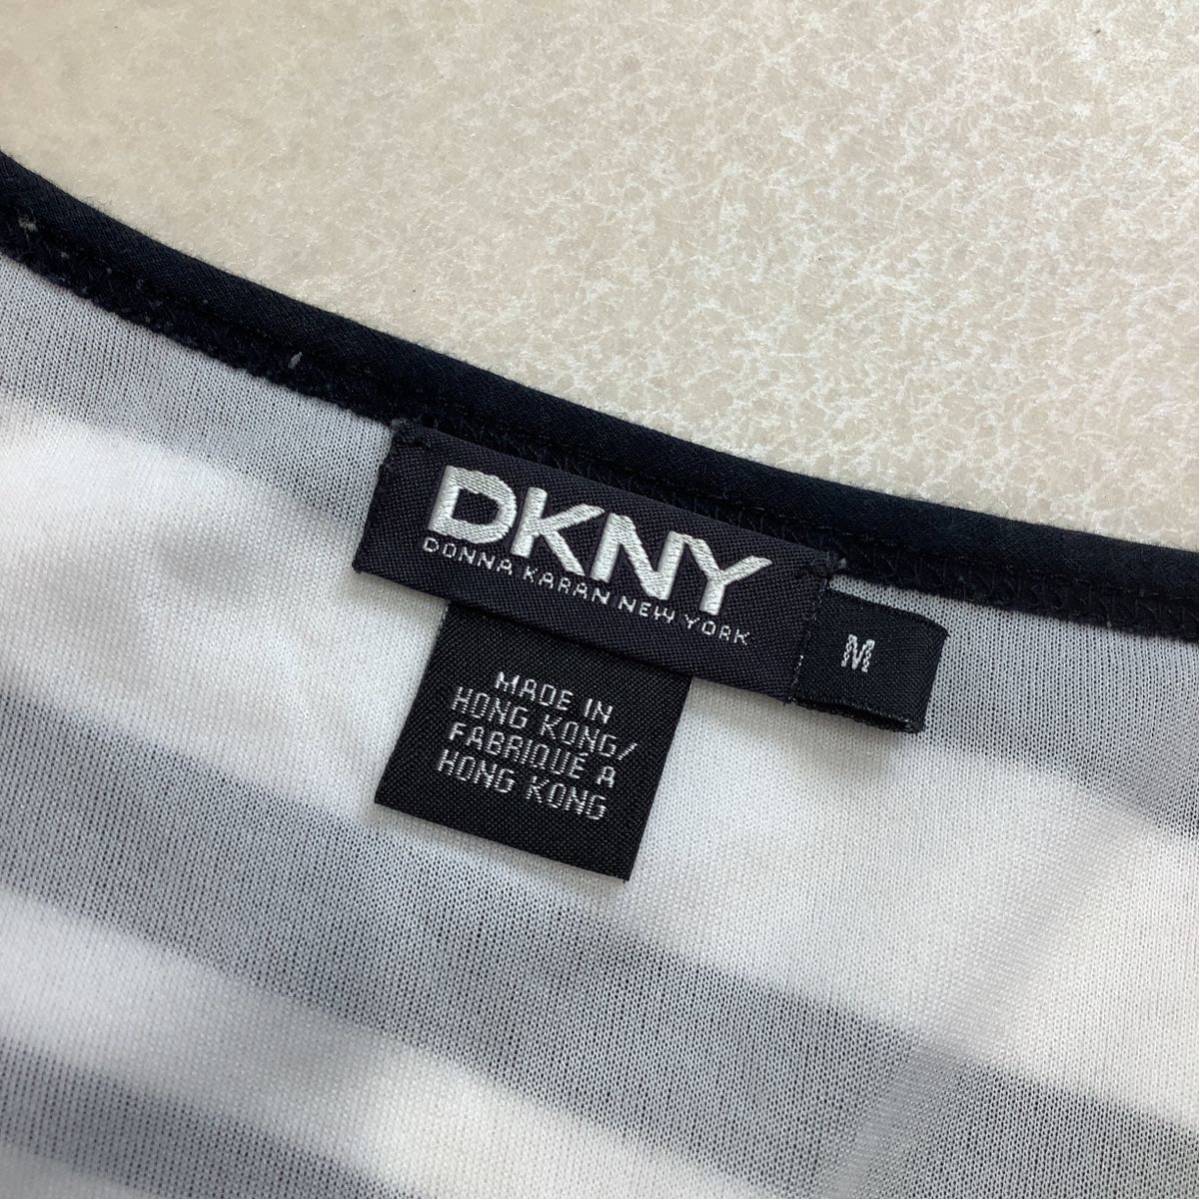 DKNY ダナキャランニューヨーク 総柄 デザインボーダー 半袖 ワンピース レディース Mサイズ ホワイト ブラック_画像7